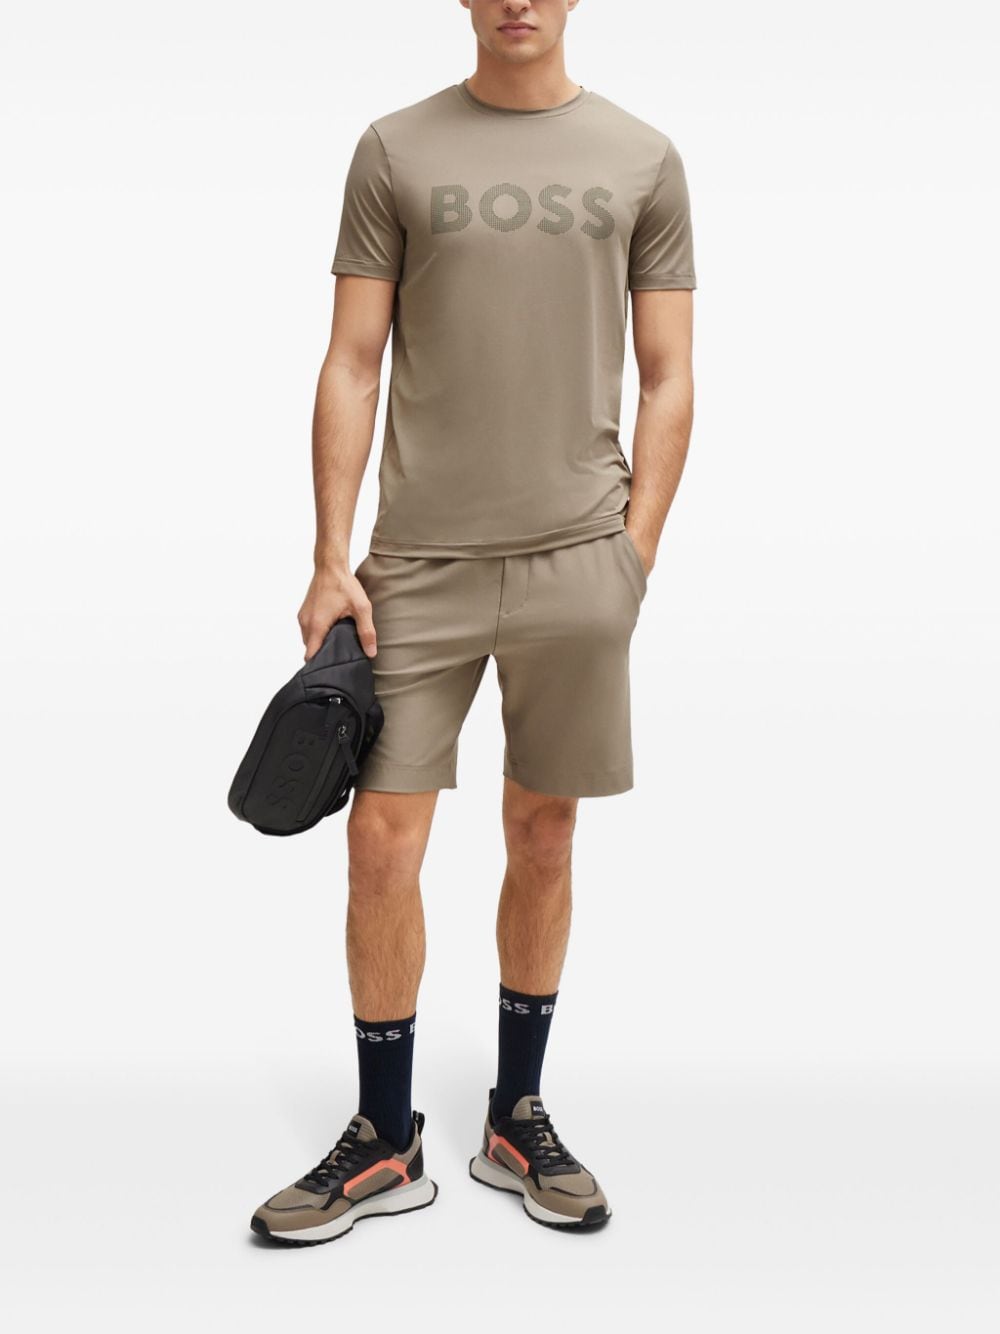 BOSS logo-print crew neck T-shirt - Beige